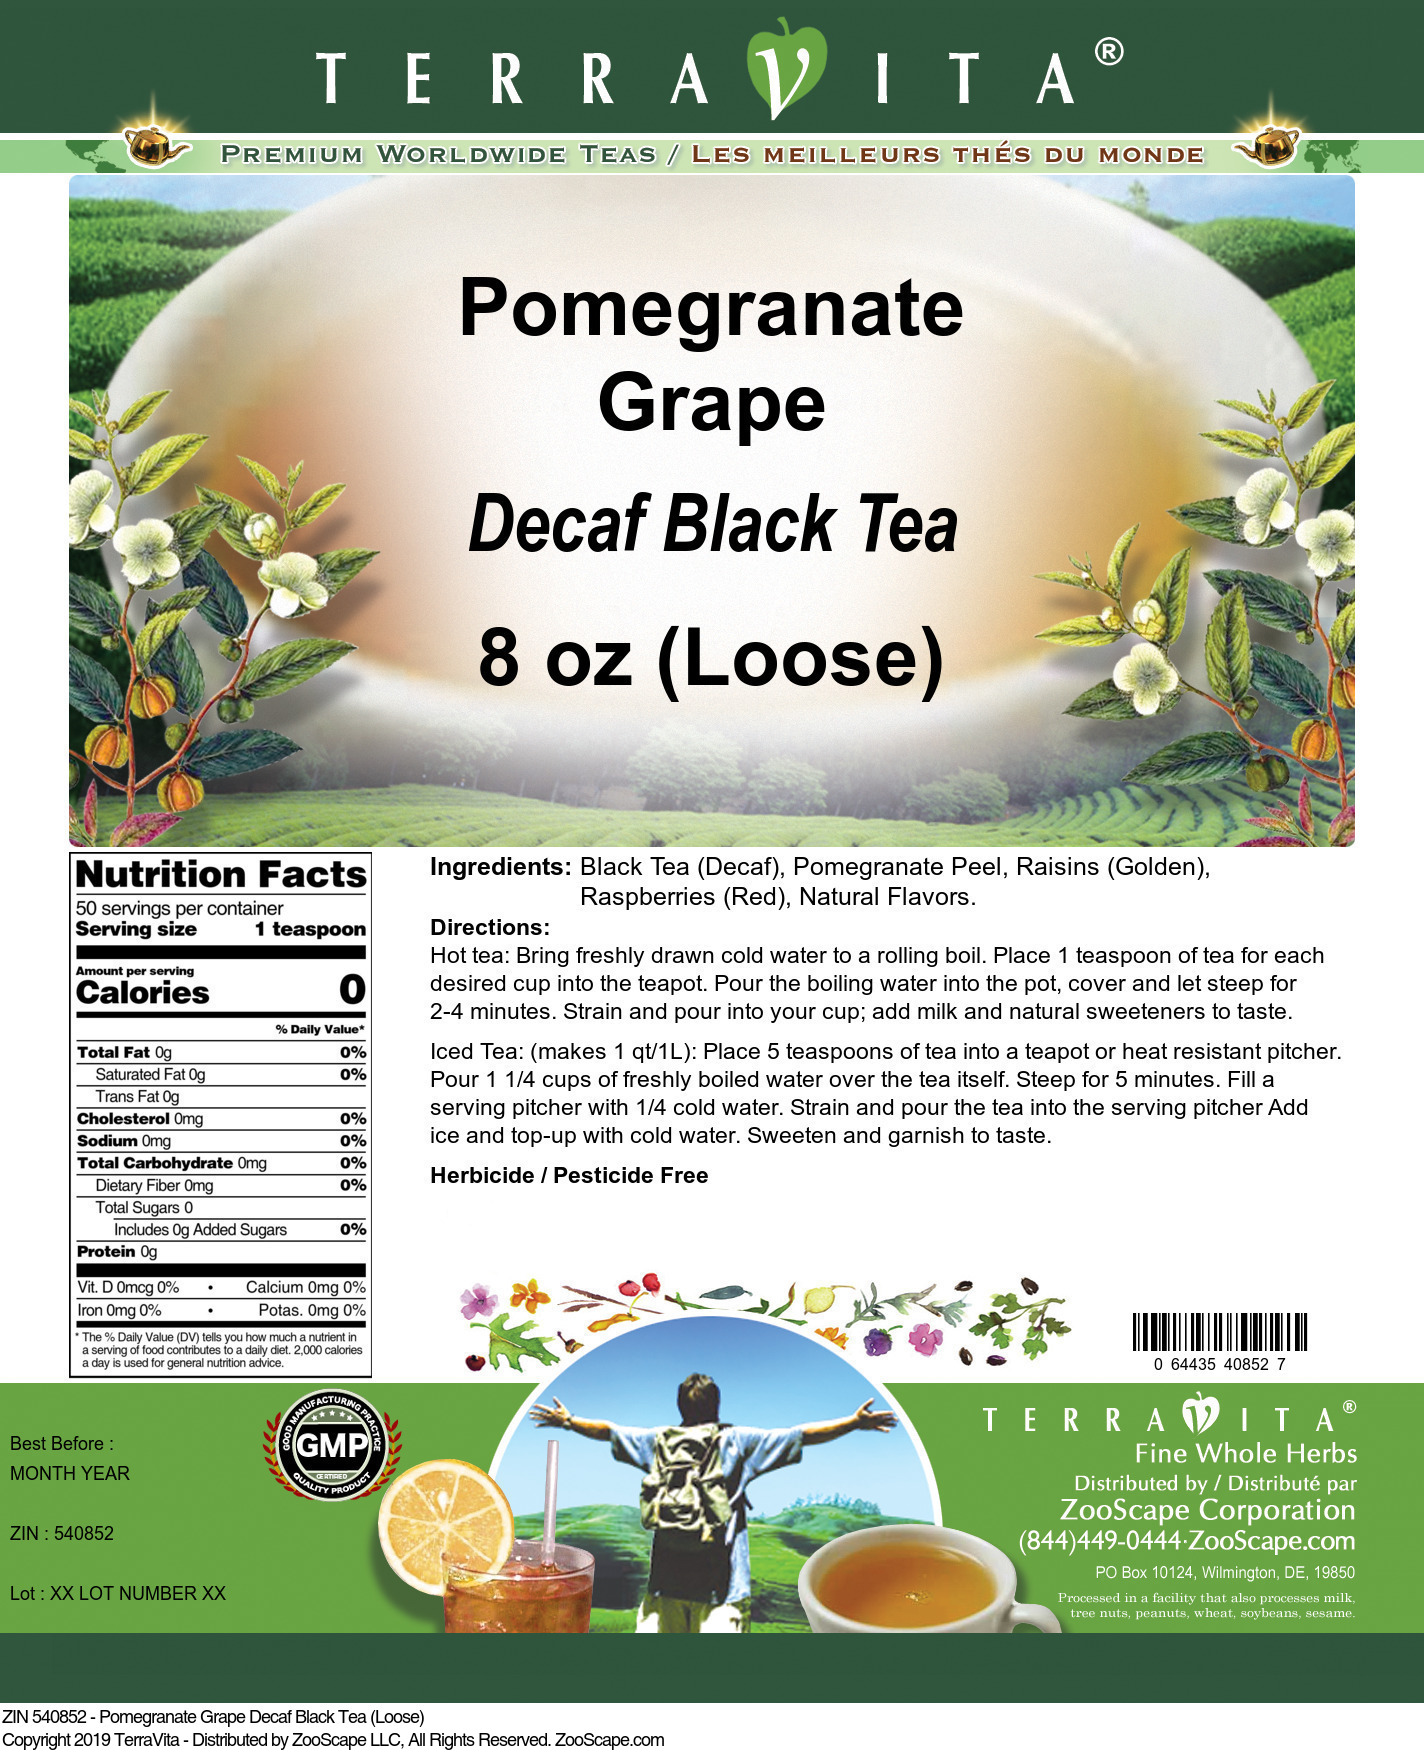 Pomegranate Grape Decaf Black Tea (Loose) - Label